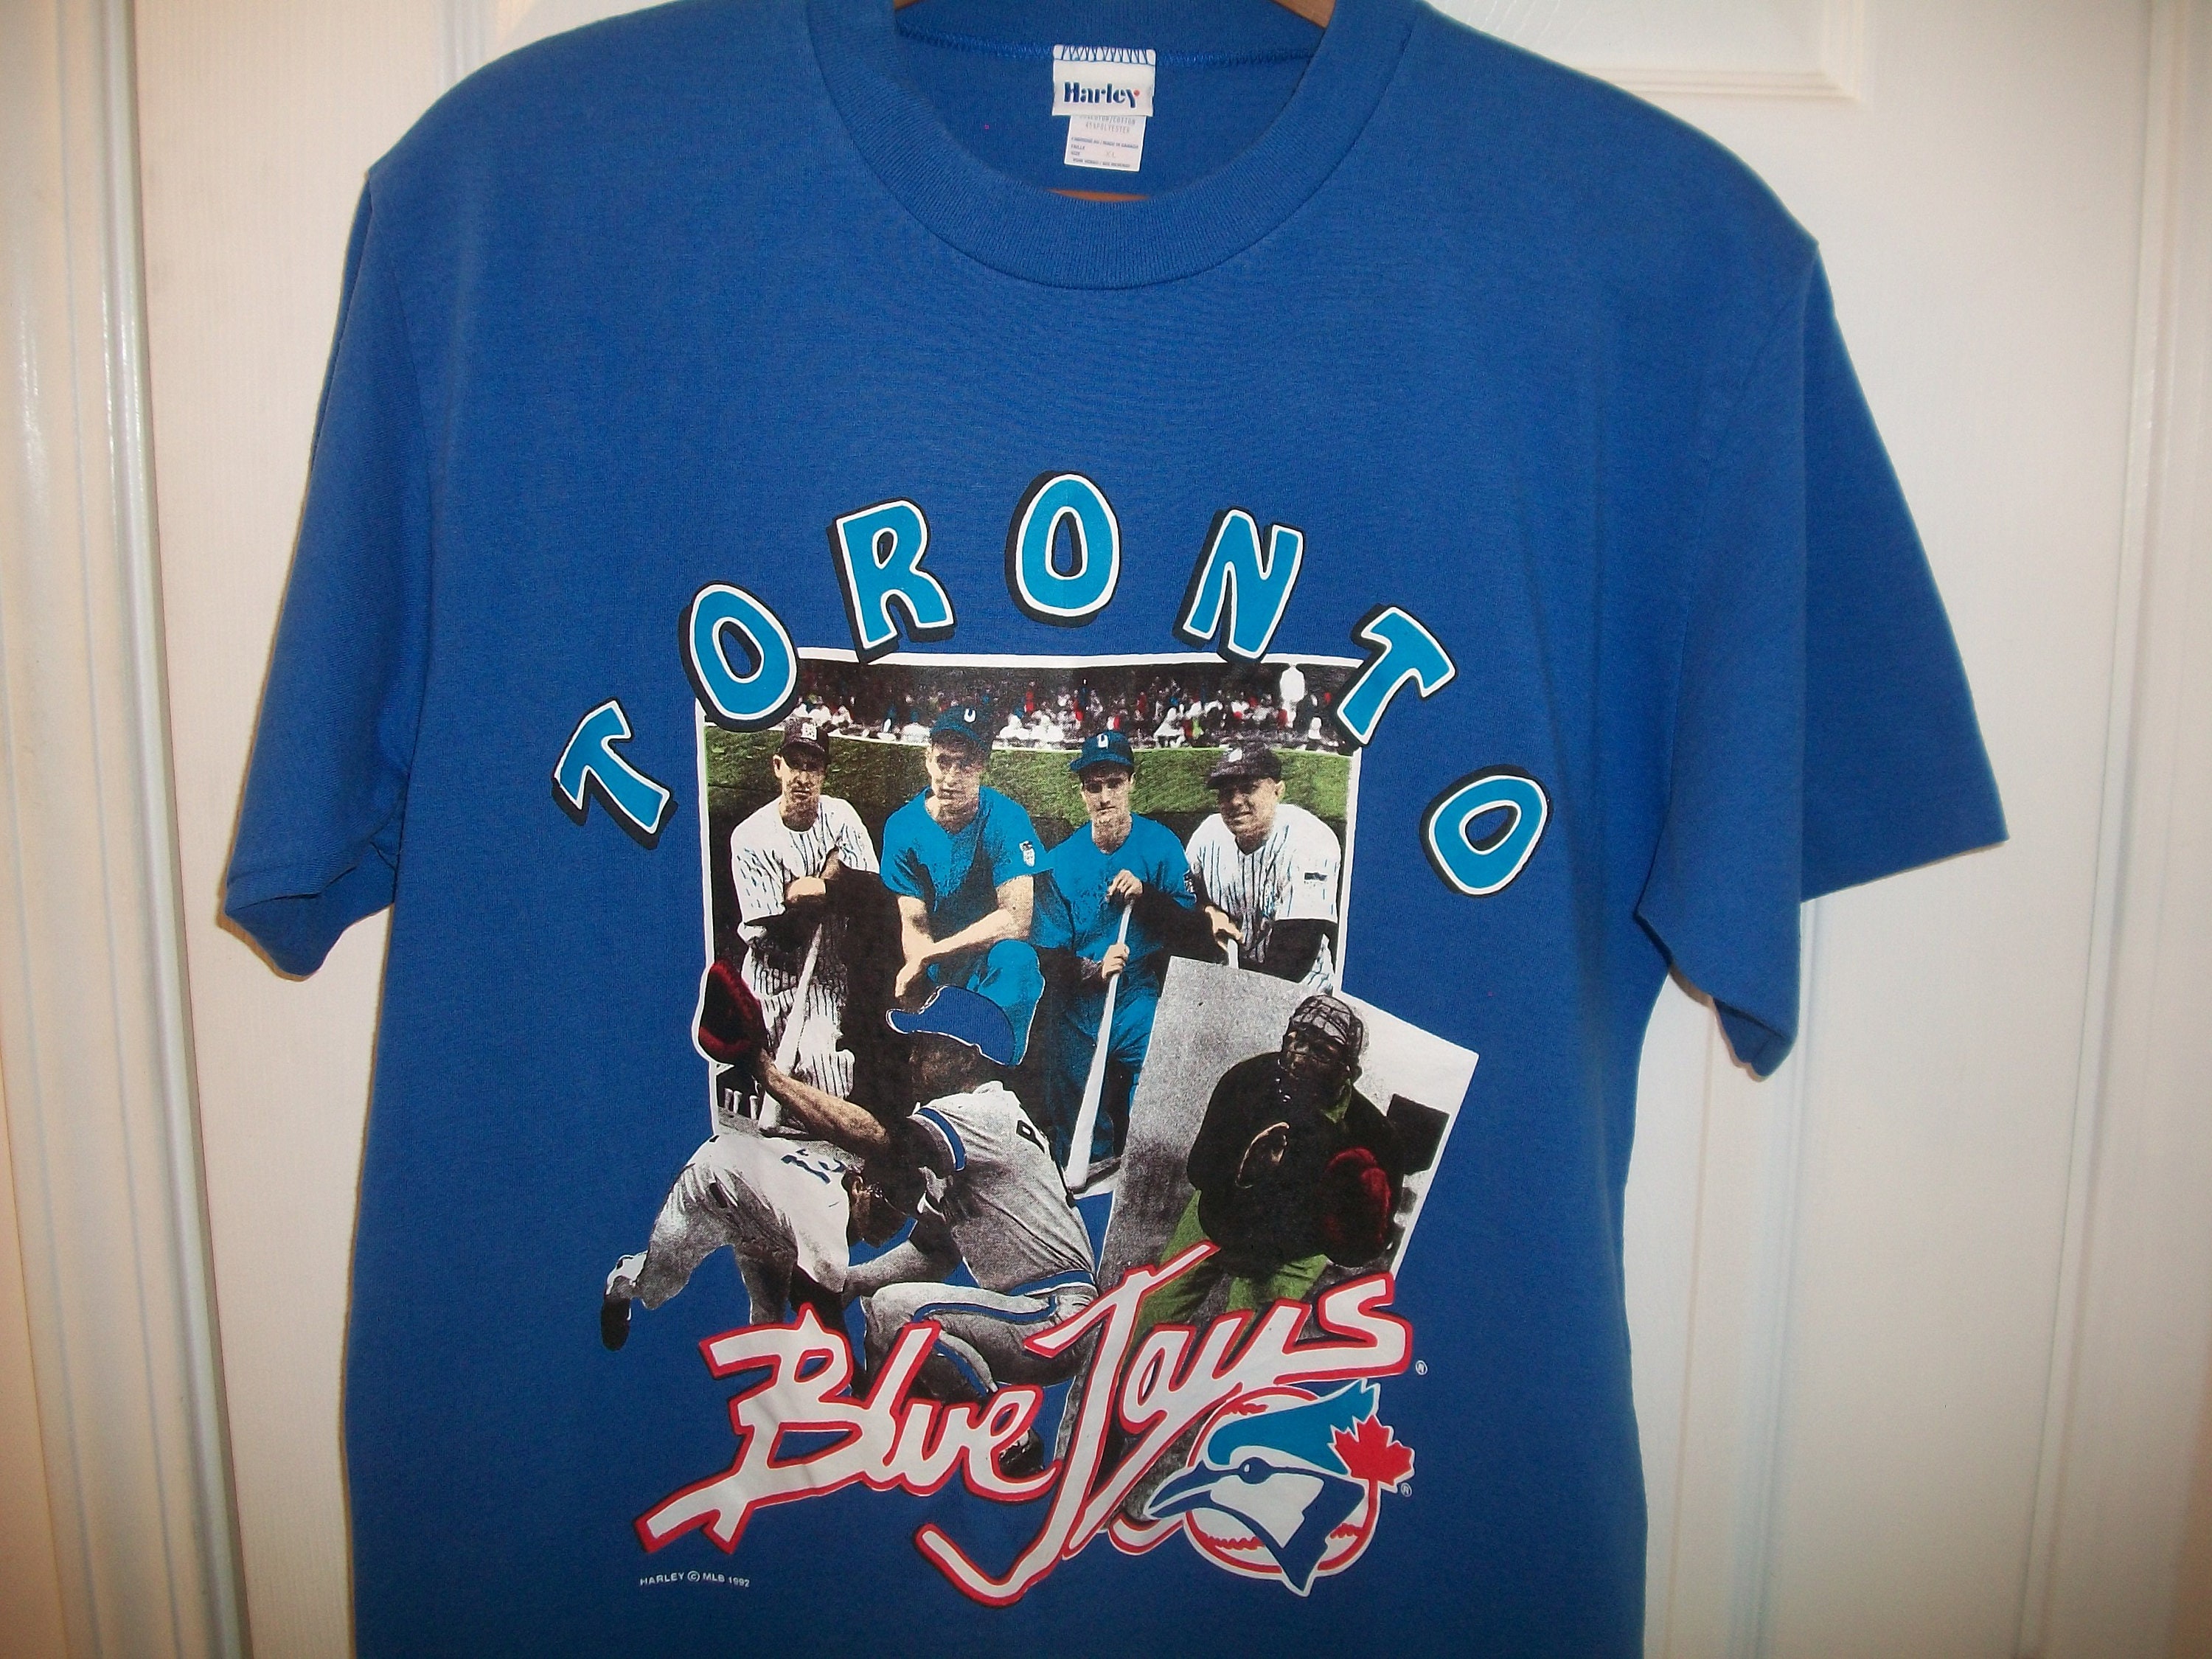 Toronto Blue Jays Vintage Sweatshirt 1994 Blue Jays Crew